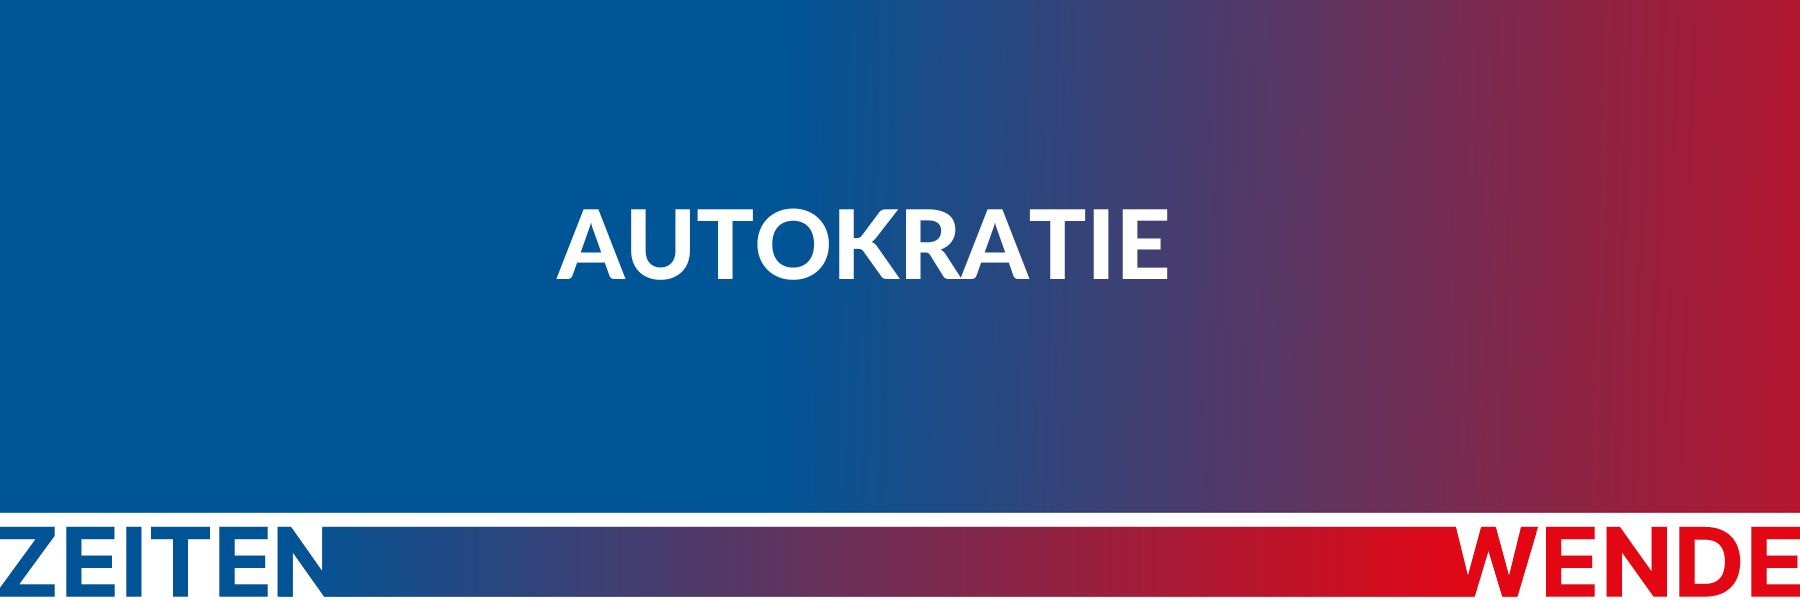 Header-Grafik mit Farbverlauf und Schriftzug "Autokratie"